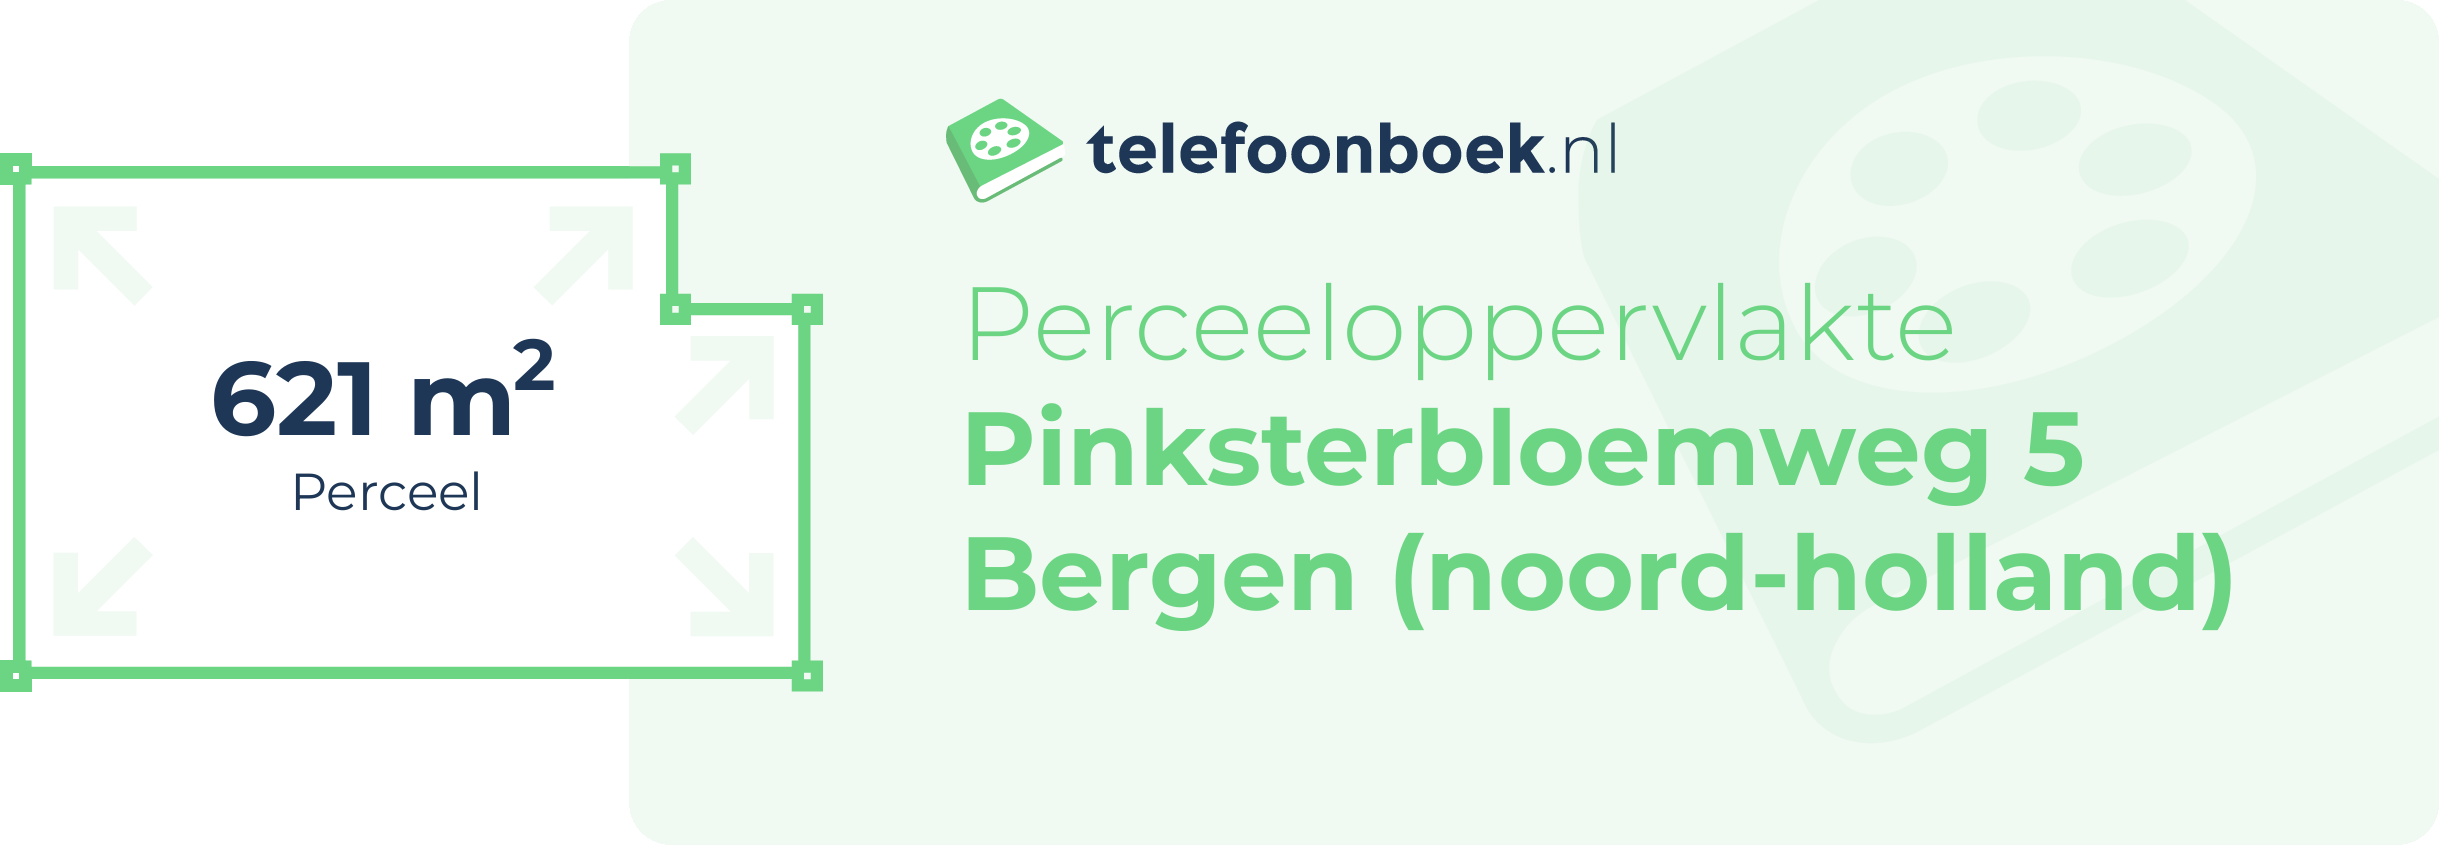 Perceeloppervlakte Pinksterbloemweg 5 Bergen (Noord-Holland)